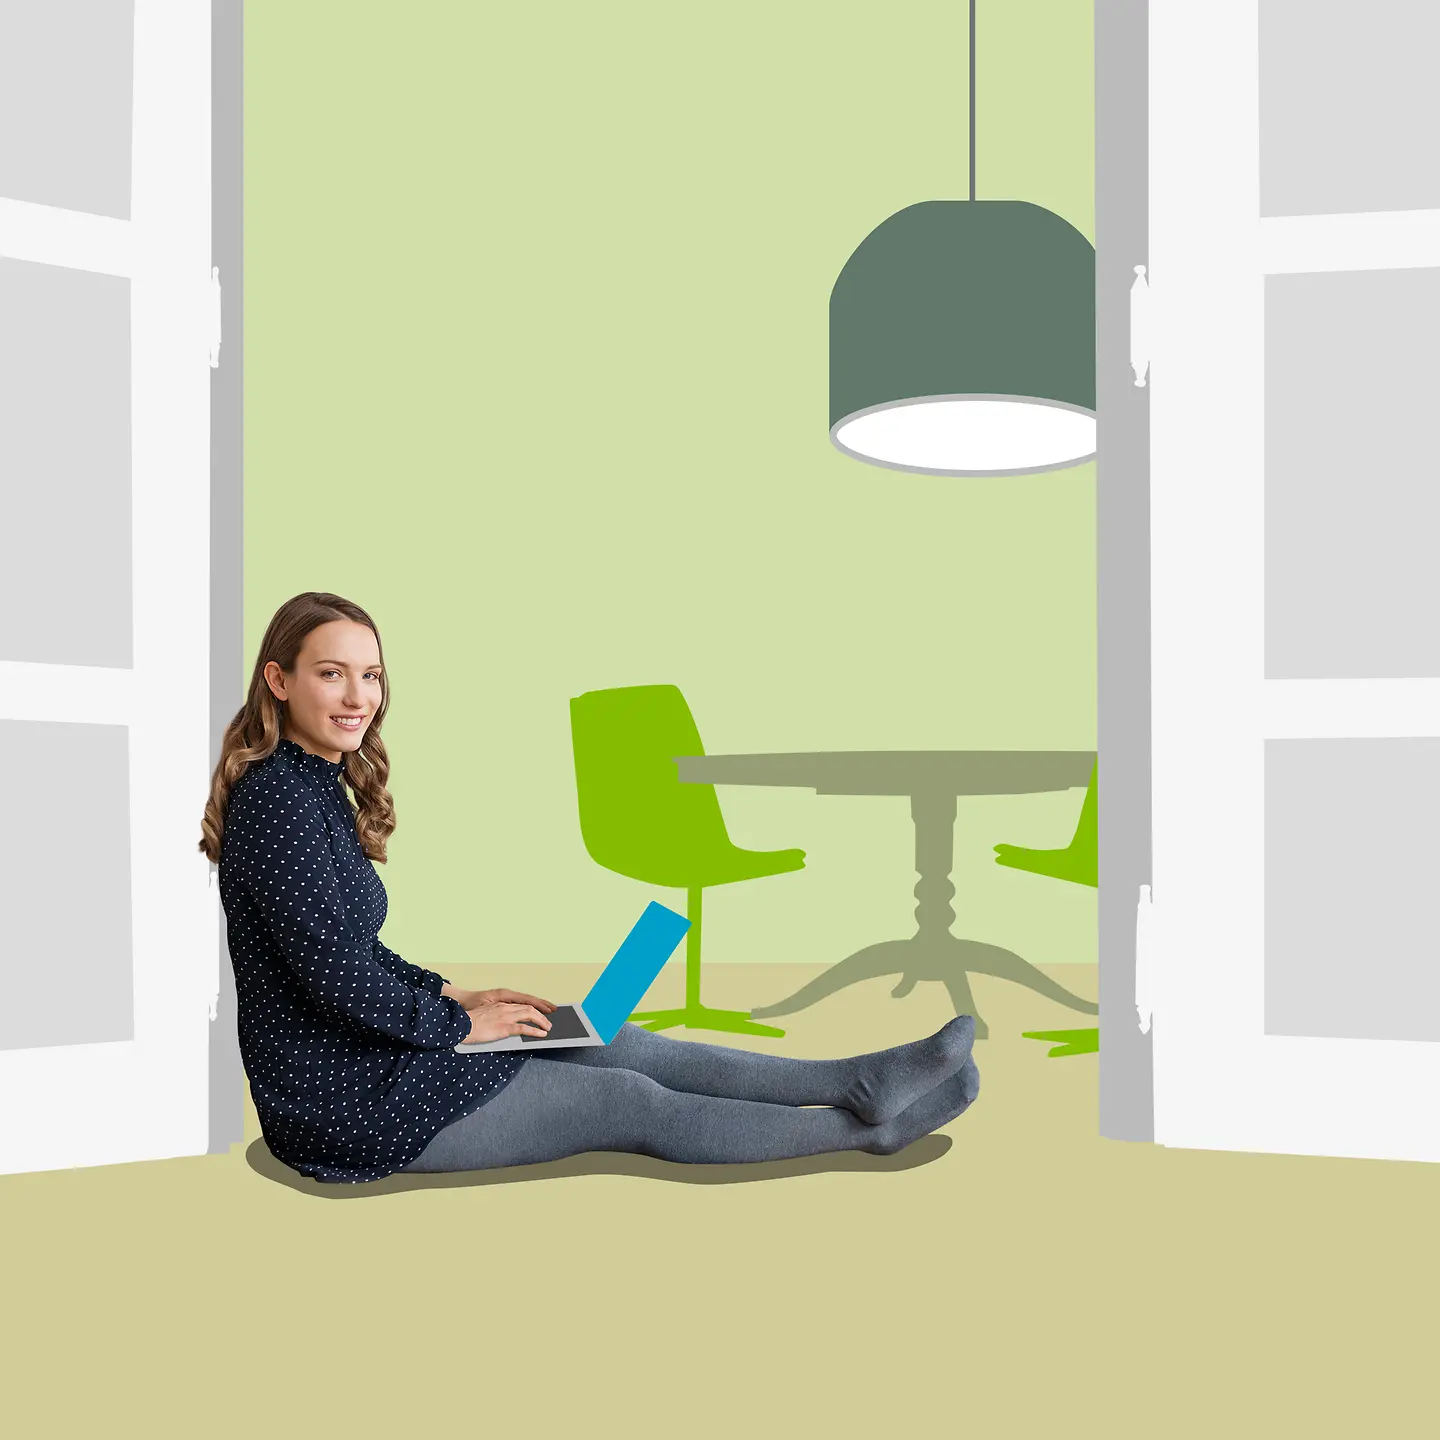 Eine Frau sitzt vor einem illustrierten Hintergrund auf dem Boden und hat ihren Laptop auf dem Schoss.